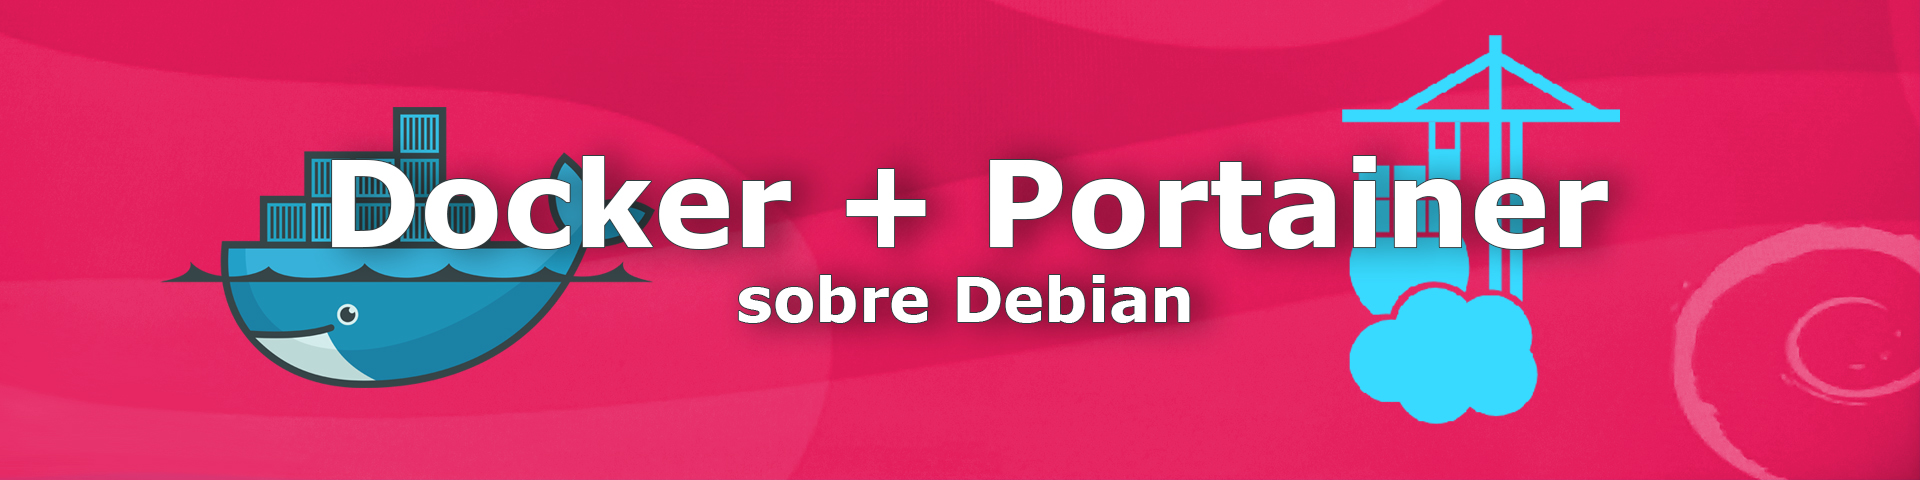 Docker y Portainer en Debian